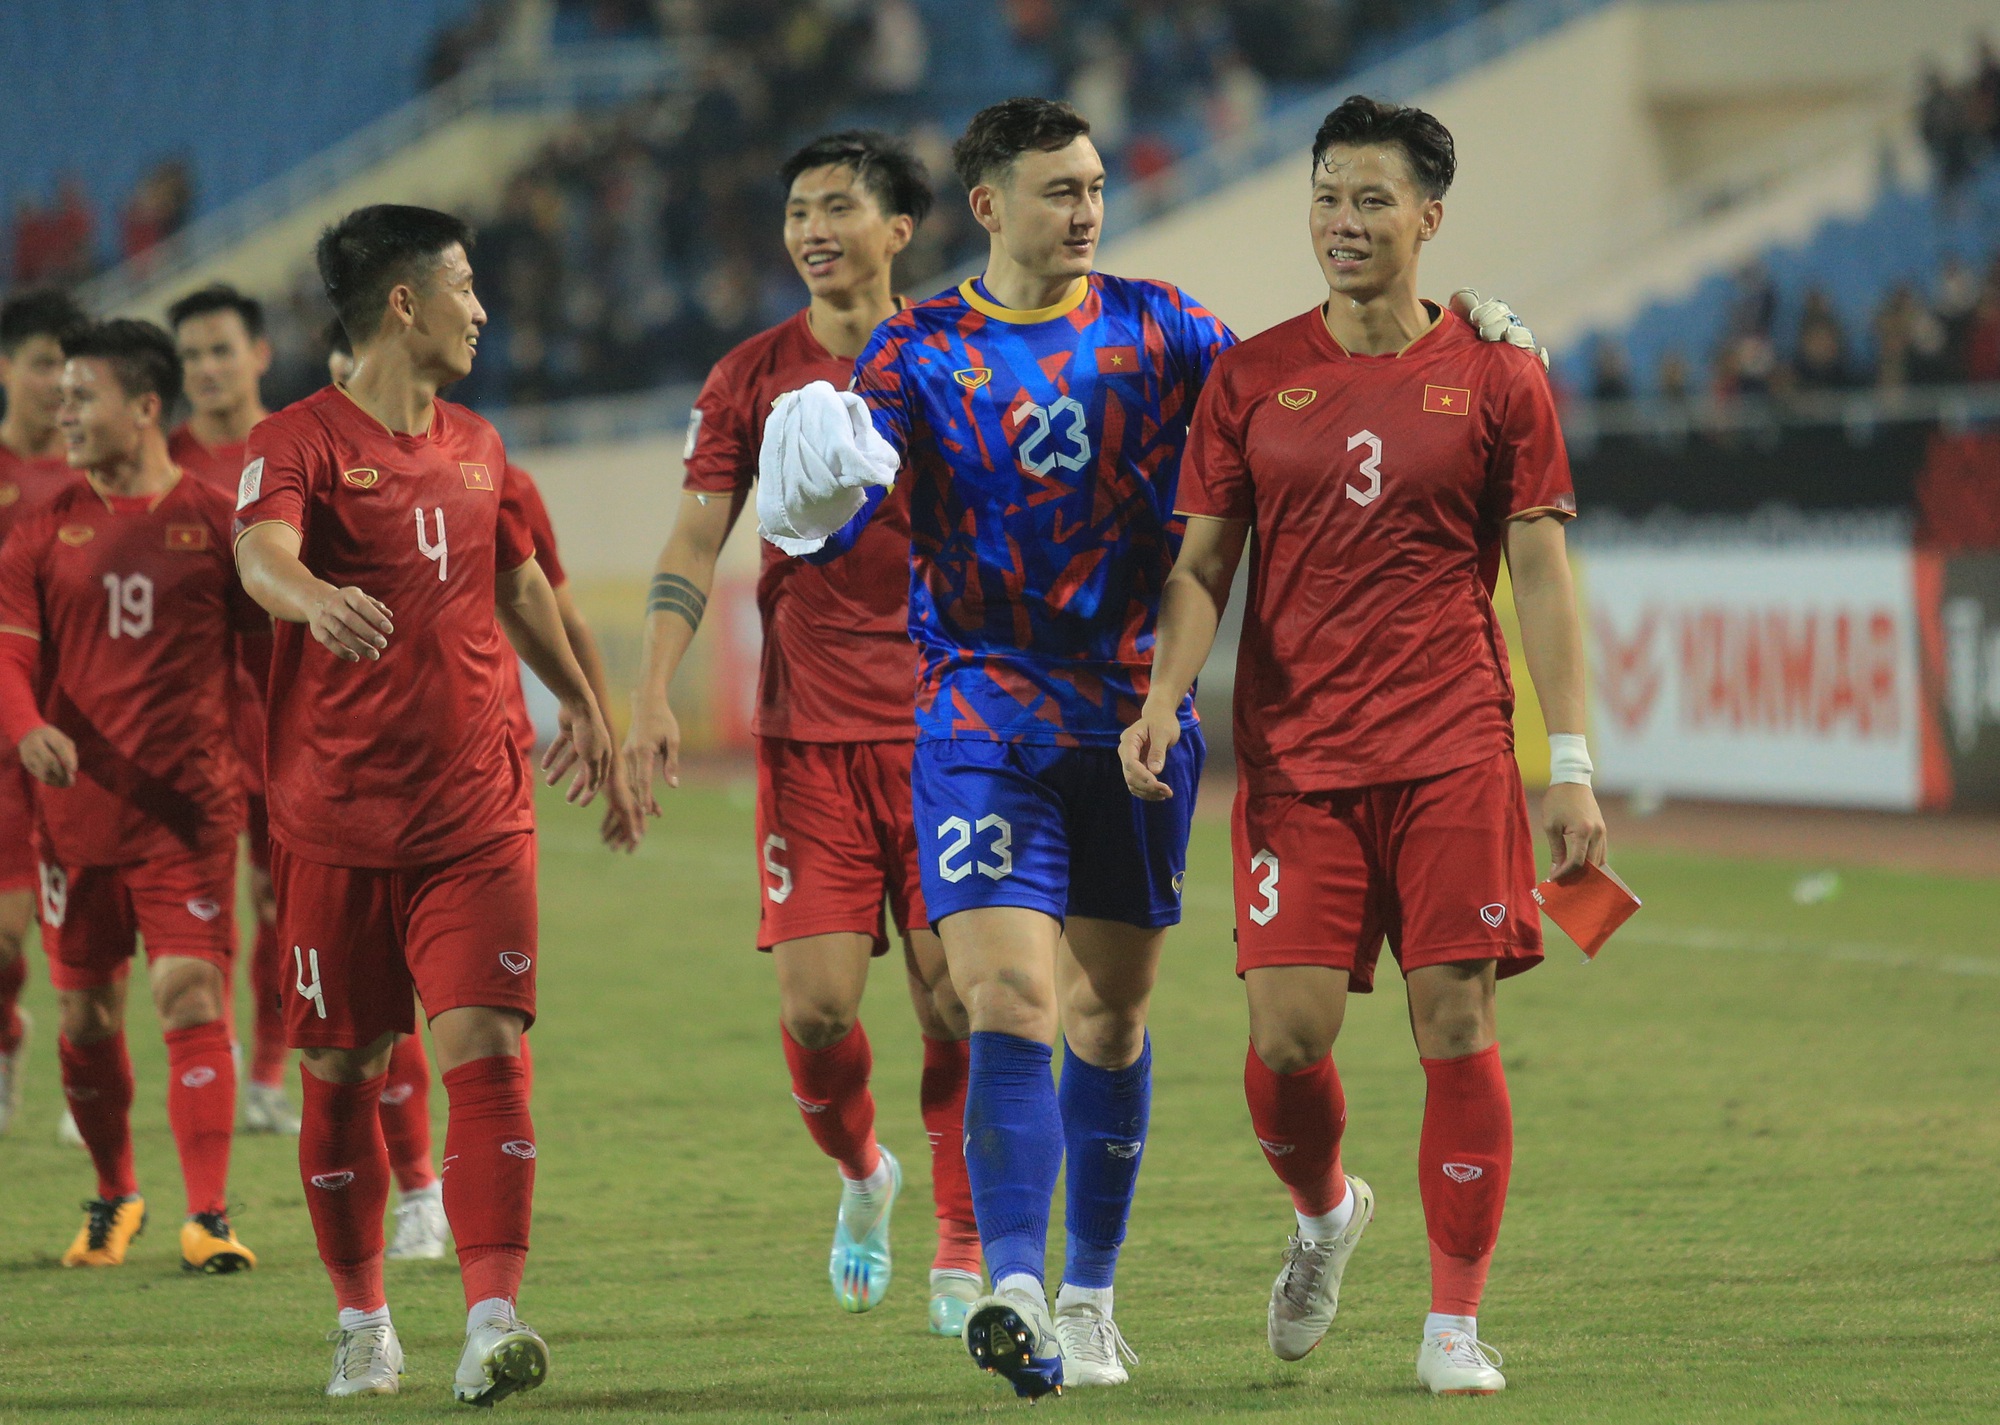 Quế Ngọc Hải ăn mừng theo phong cách của Ronaldo khi ghi bàn cho tuyển Việt Nam - Ảnh 5.